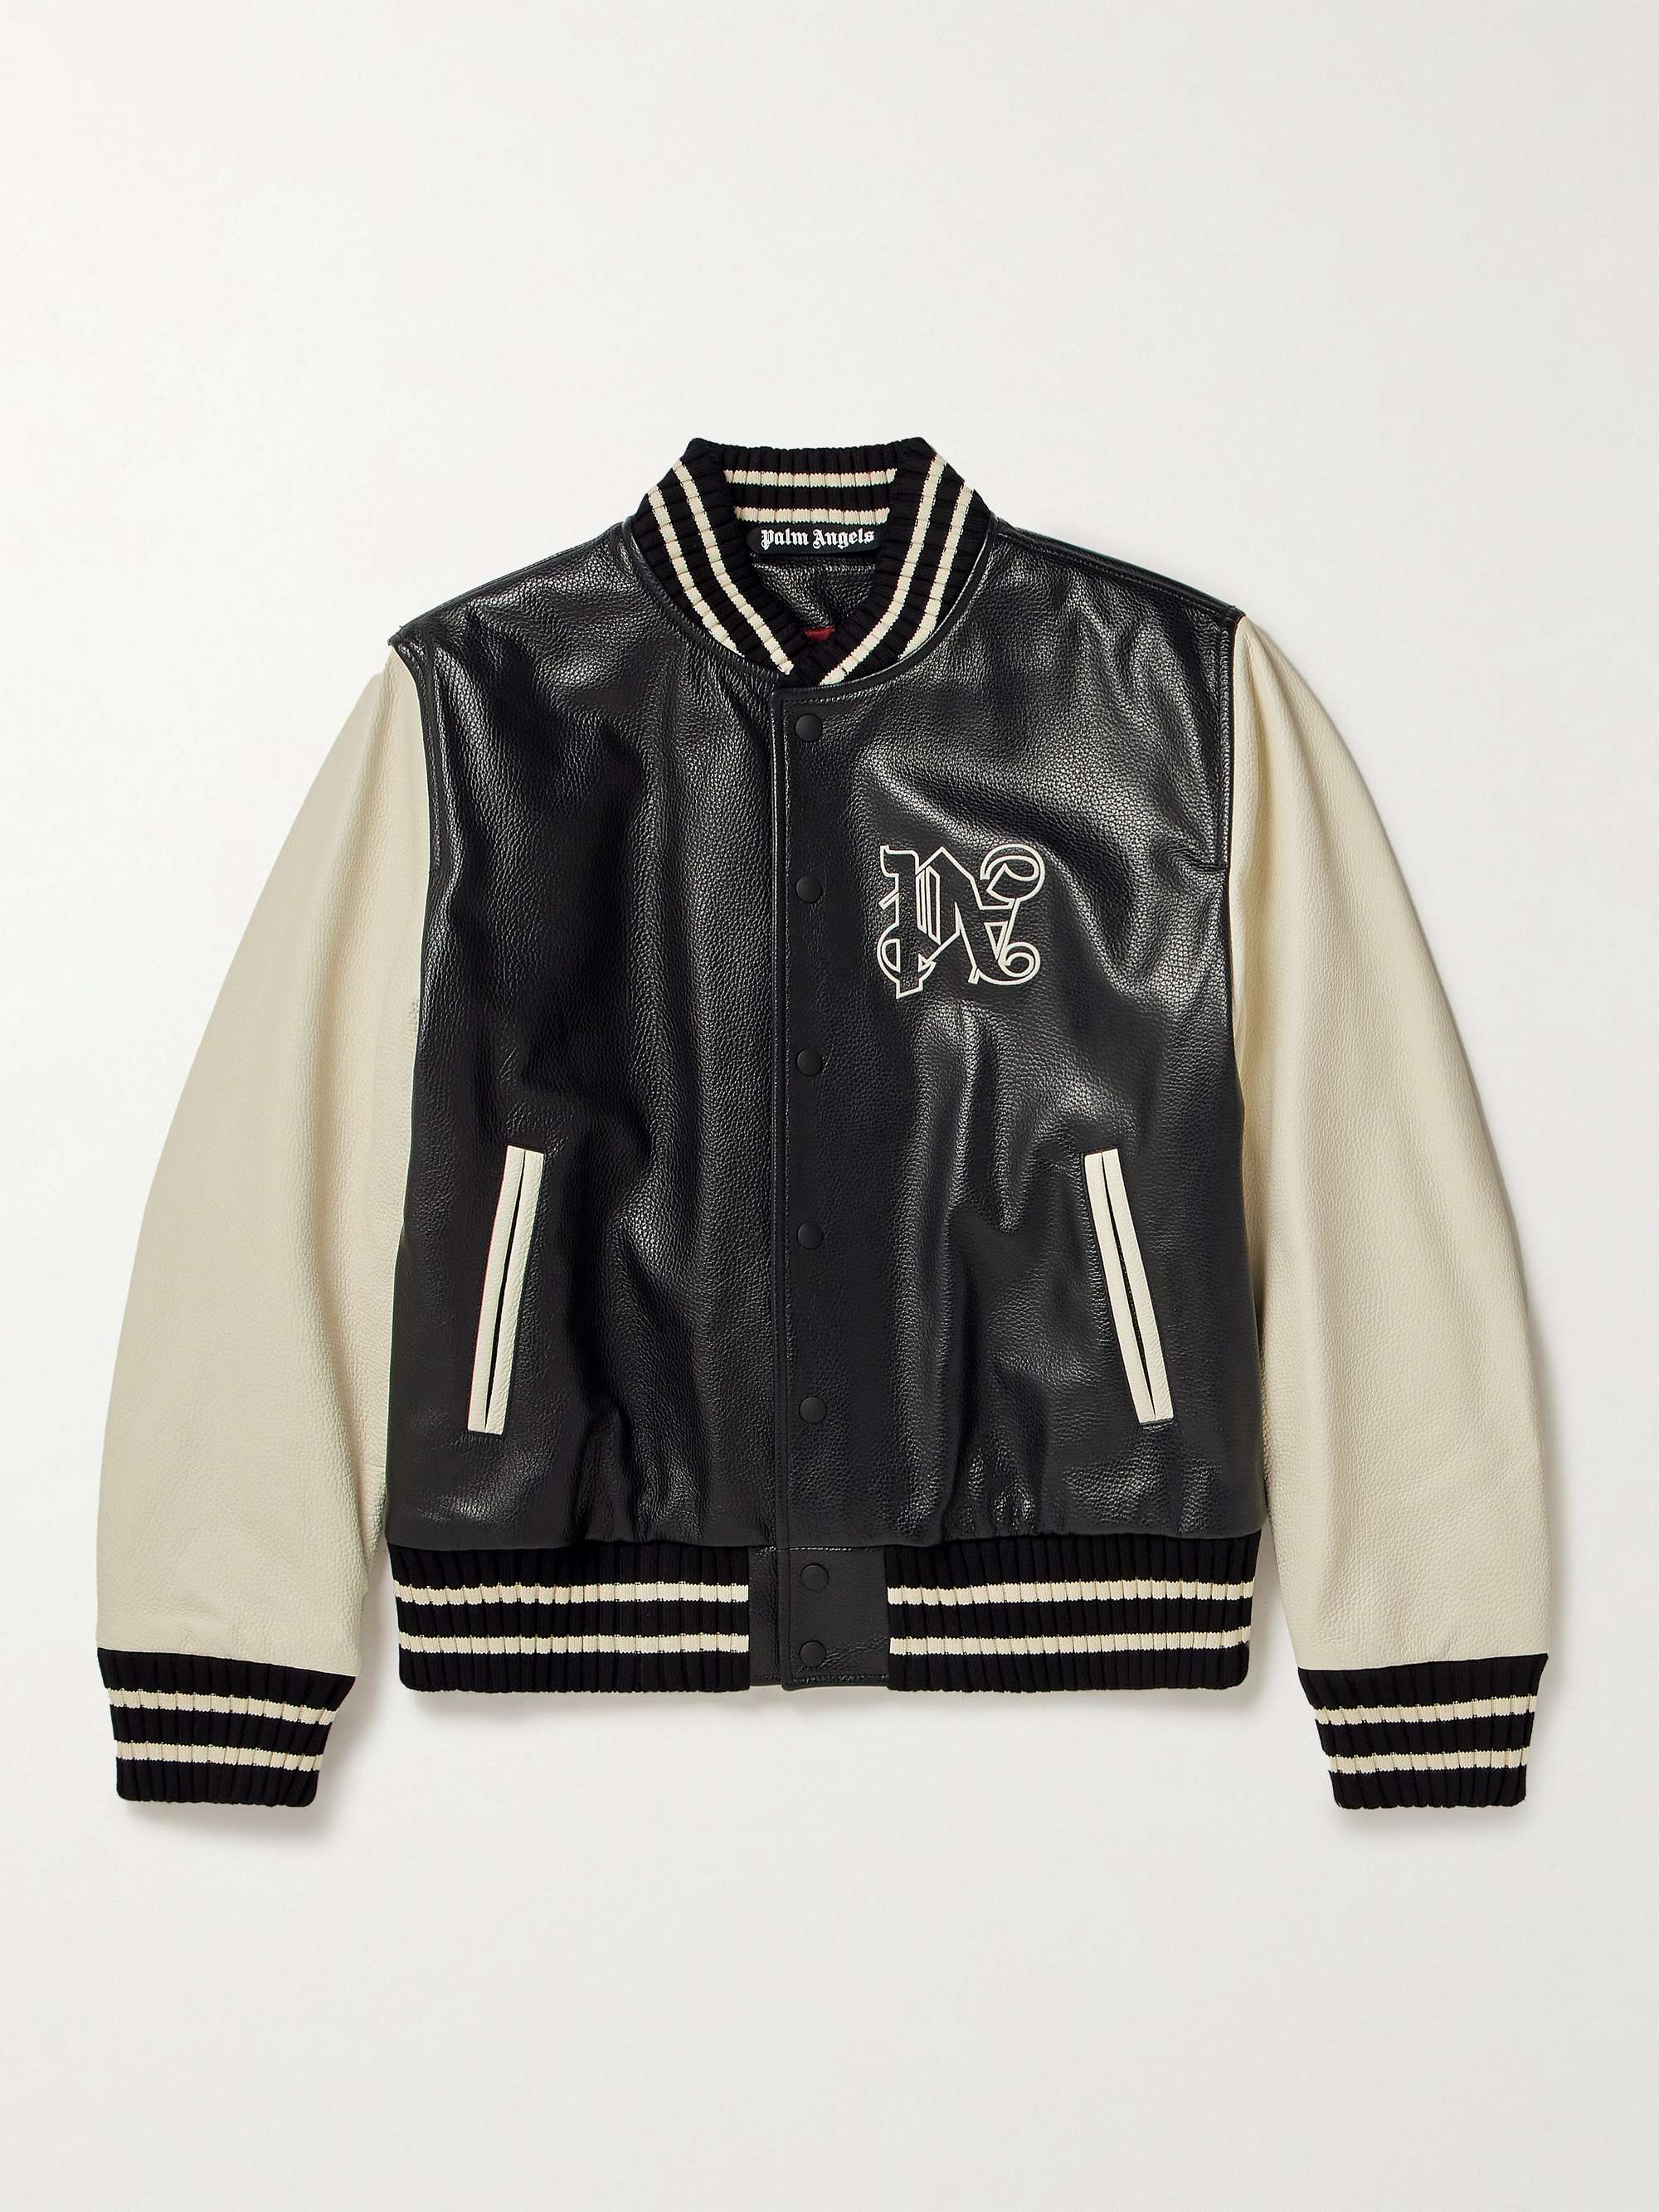 PALM ANGELS Appliquéd Leather Varsity Jacket for Men | MR PORTER